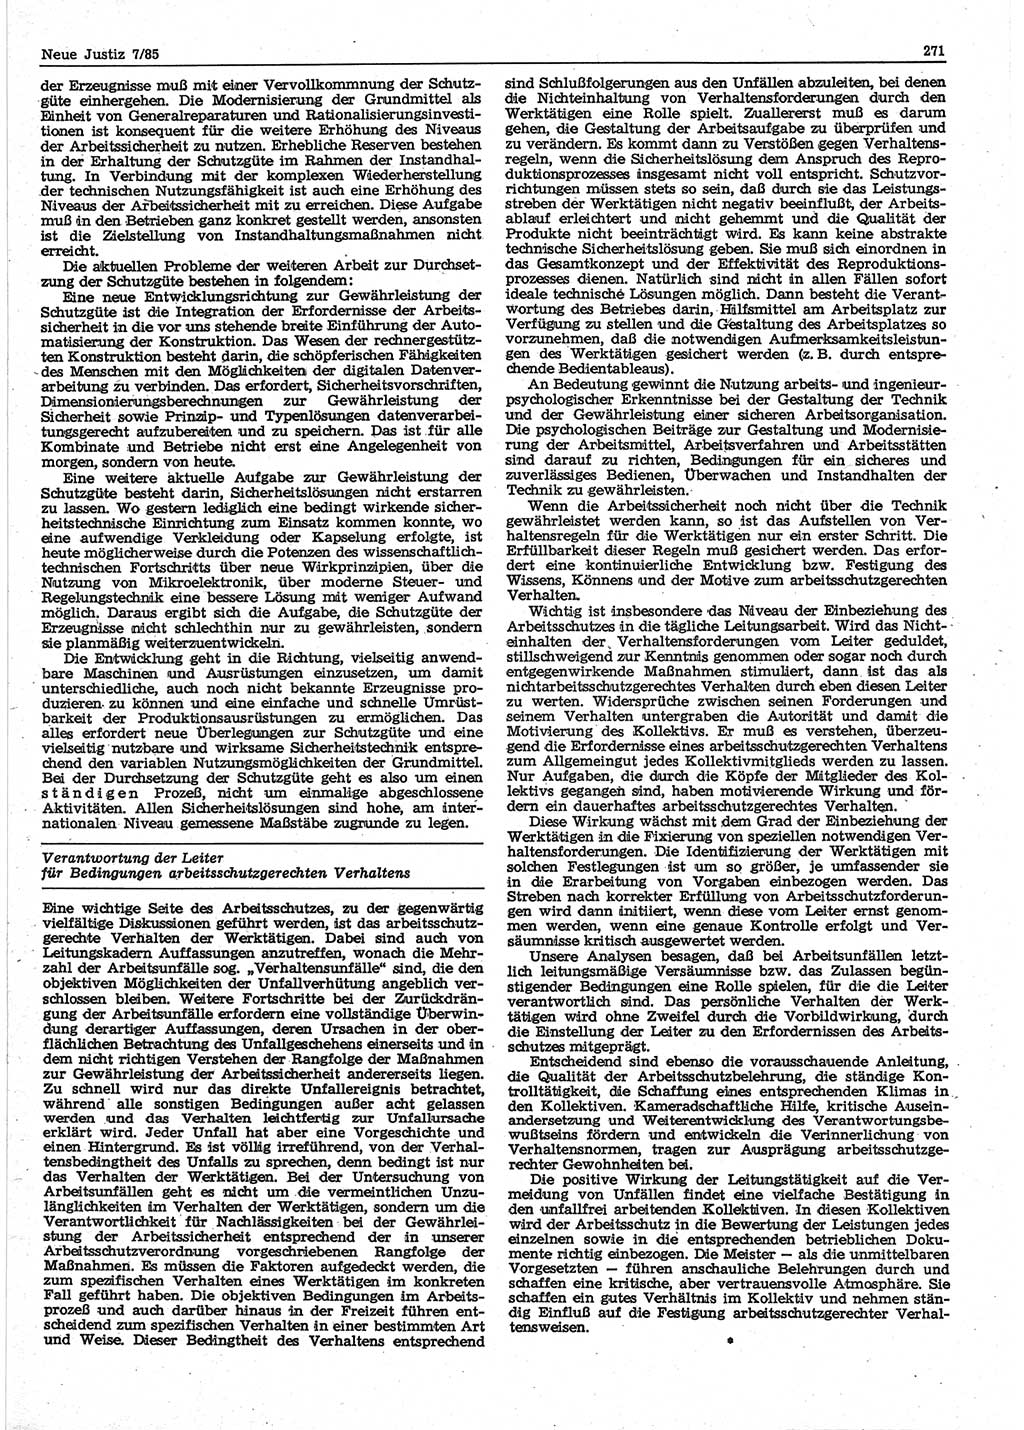 Neue Justiz (NJ), Zeitschrift für sozialistisches Recht und Gesetzlichkeit [Deutsche Demokratische Republik (DDR)], 39. Jahrgang 1985, Seite 271 (NJ DDR 1985, S. 271)